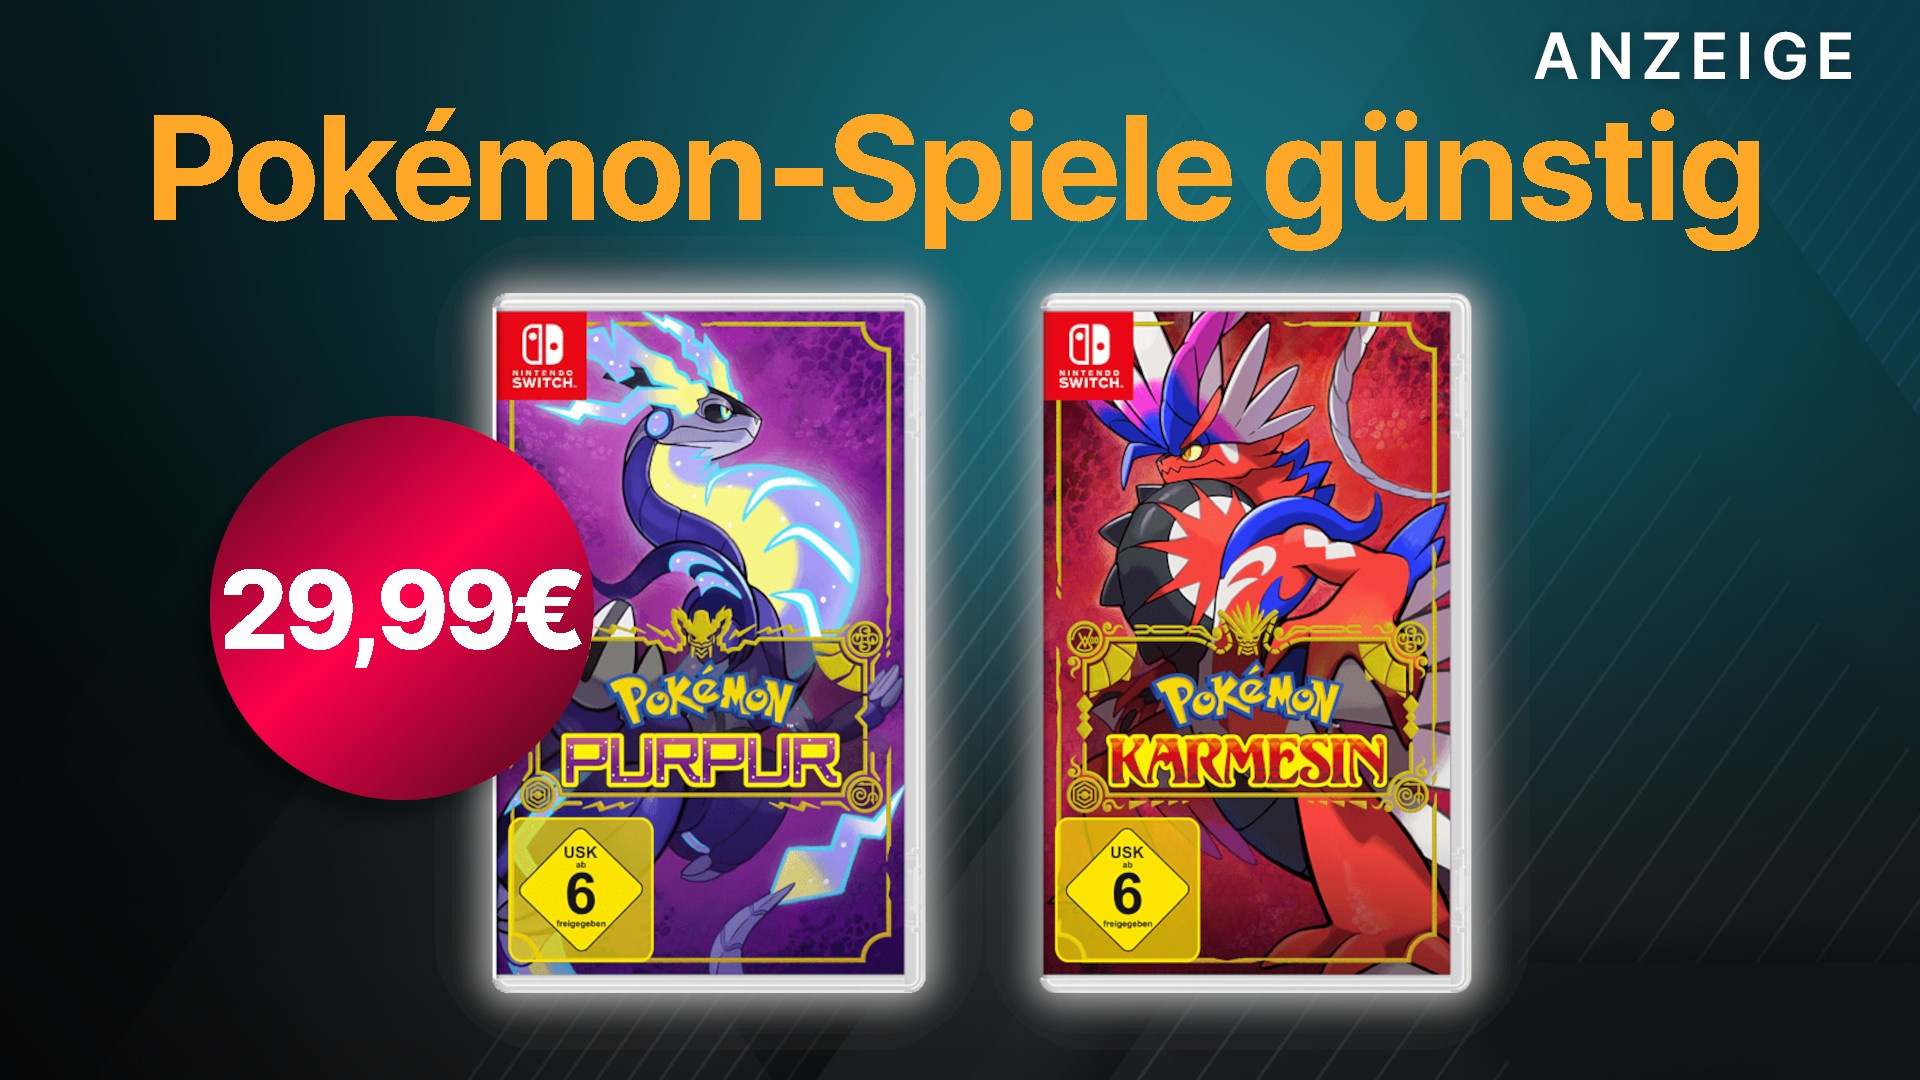 heute: & für für 29,99€ Pokémon im Switch Angebot Karmesin Nur Purpur Nintendo noch